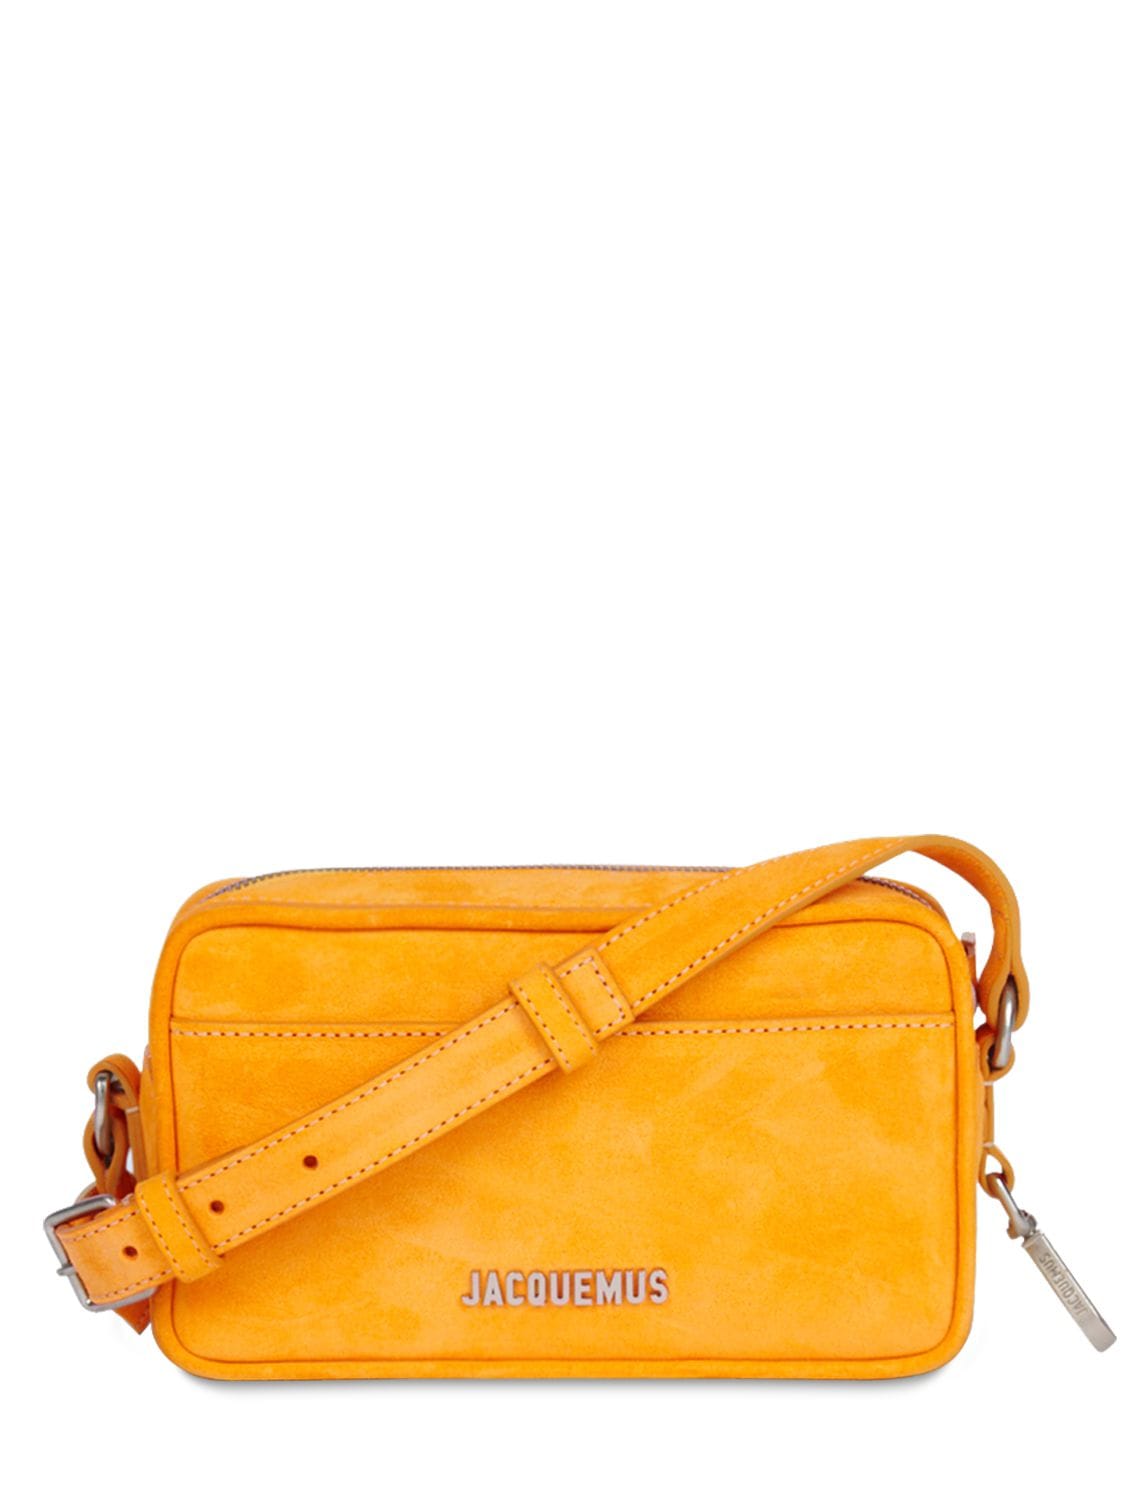 Jacquemus Le Baneto Suede Crossbody Bag In Orange | ModeSens